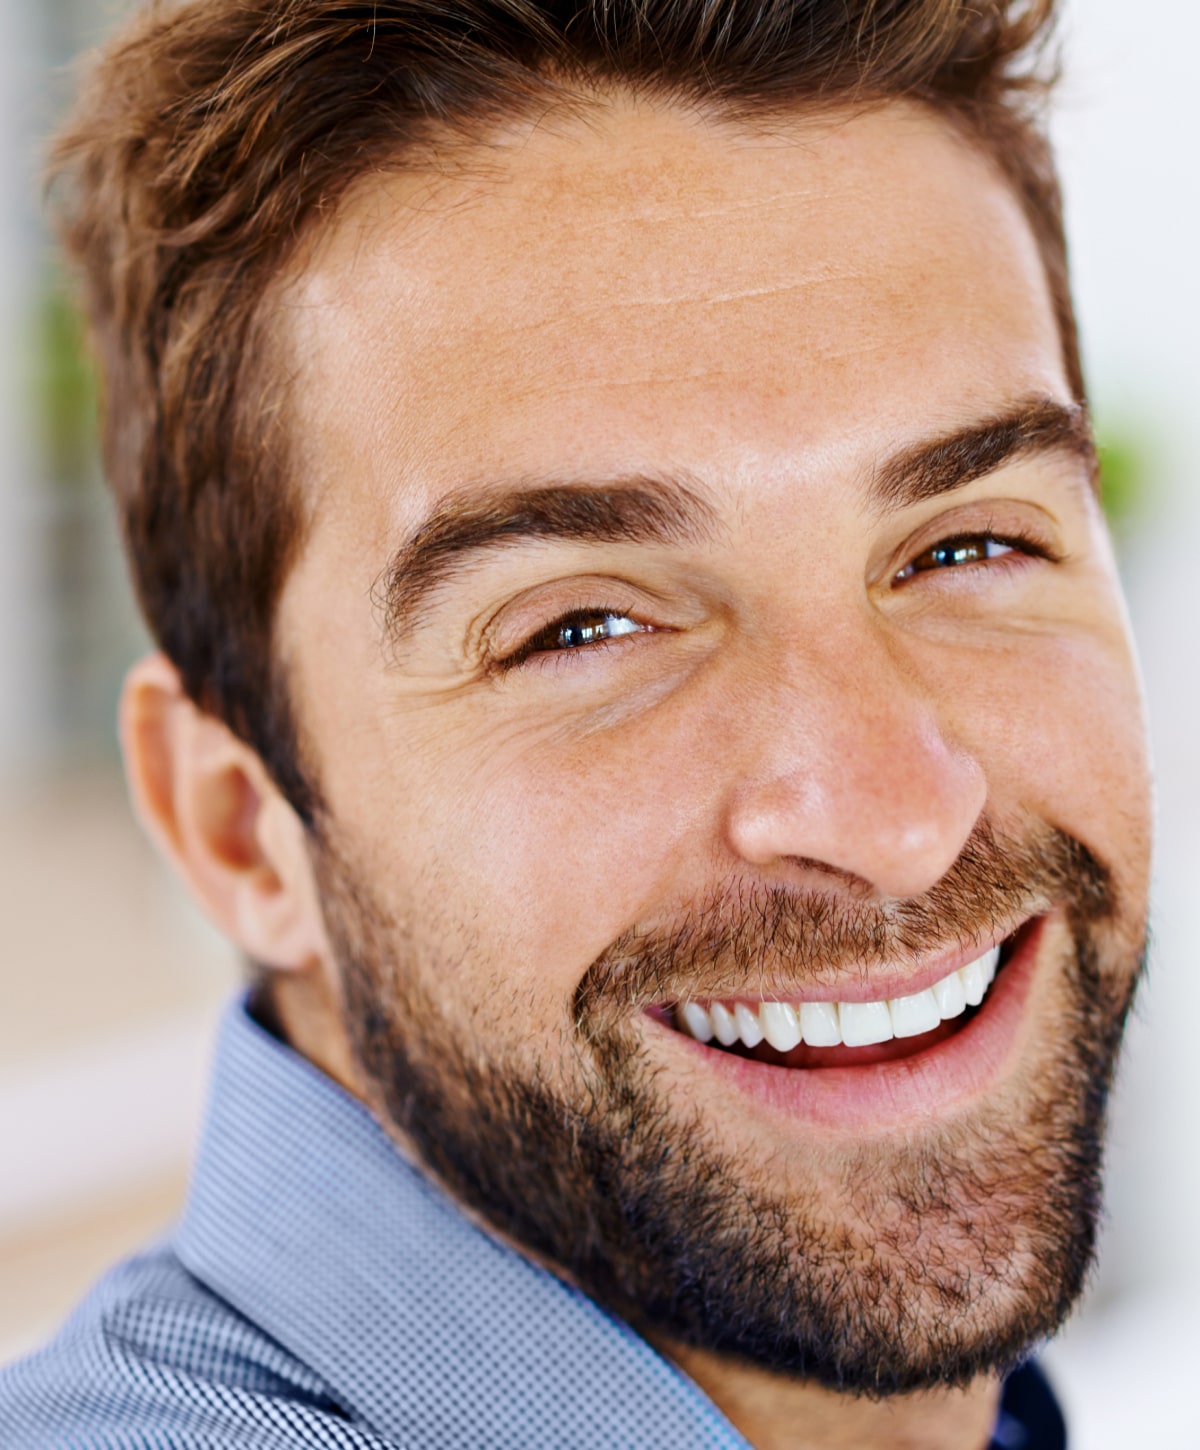 Beverly Hills dental veneers patient model smiling broadly